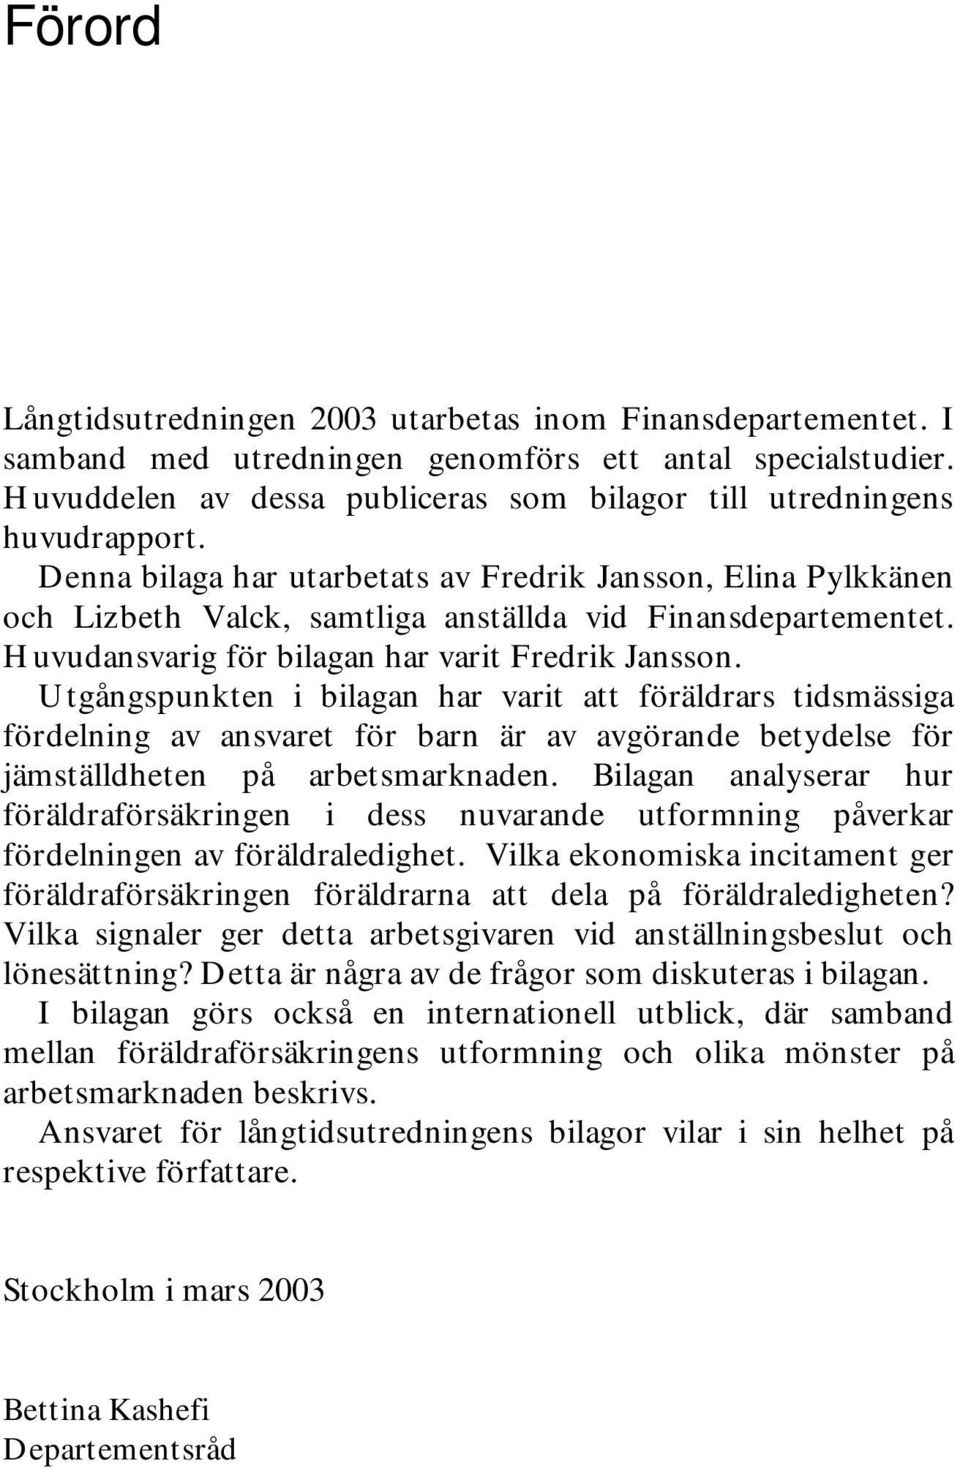 Denna bilaga har utarbetats av Fredrik Jansson, Elina Pylkkänen och Lizbeth Valck, samtliga anställda vid Finansdepartementet. Huvudansvarig för bilagan har varit Fredrik Jansson.